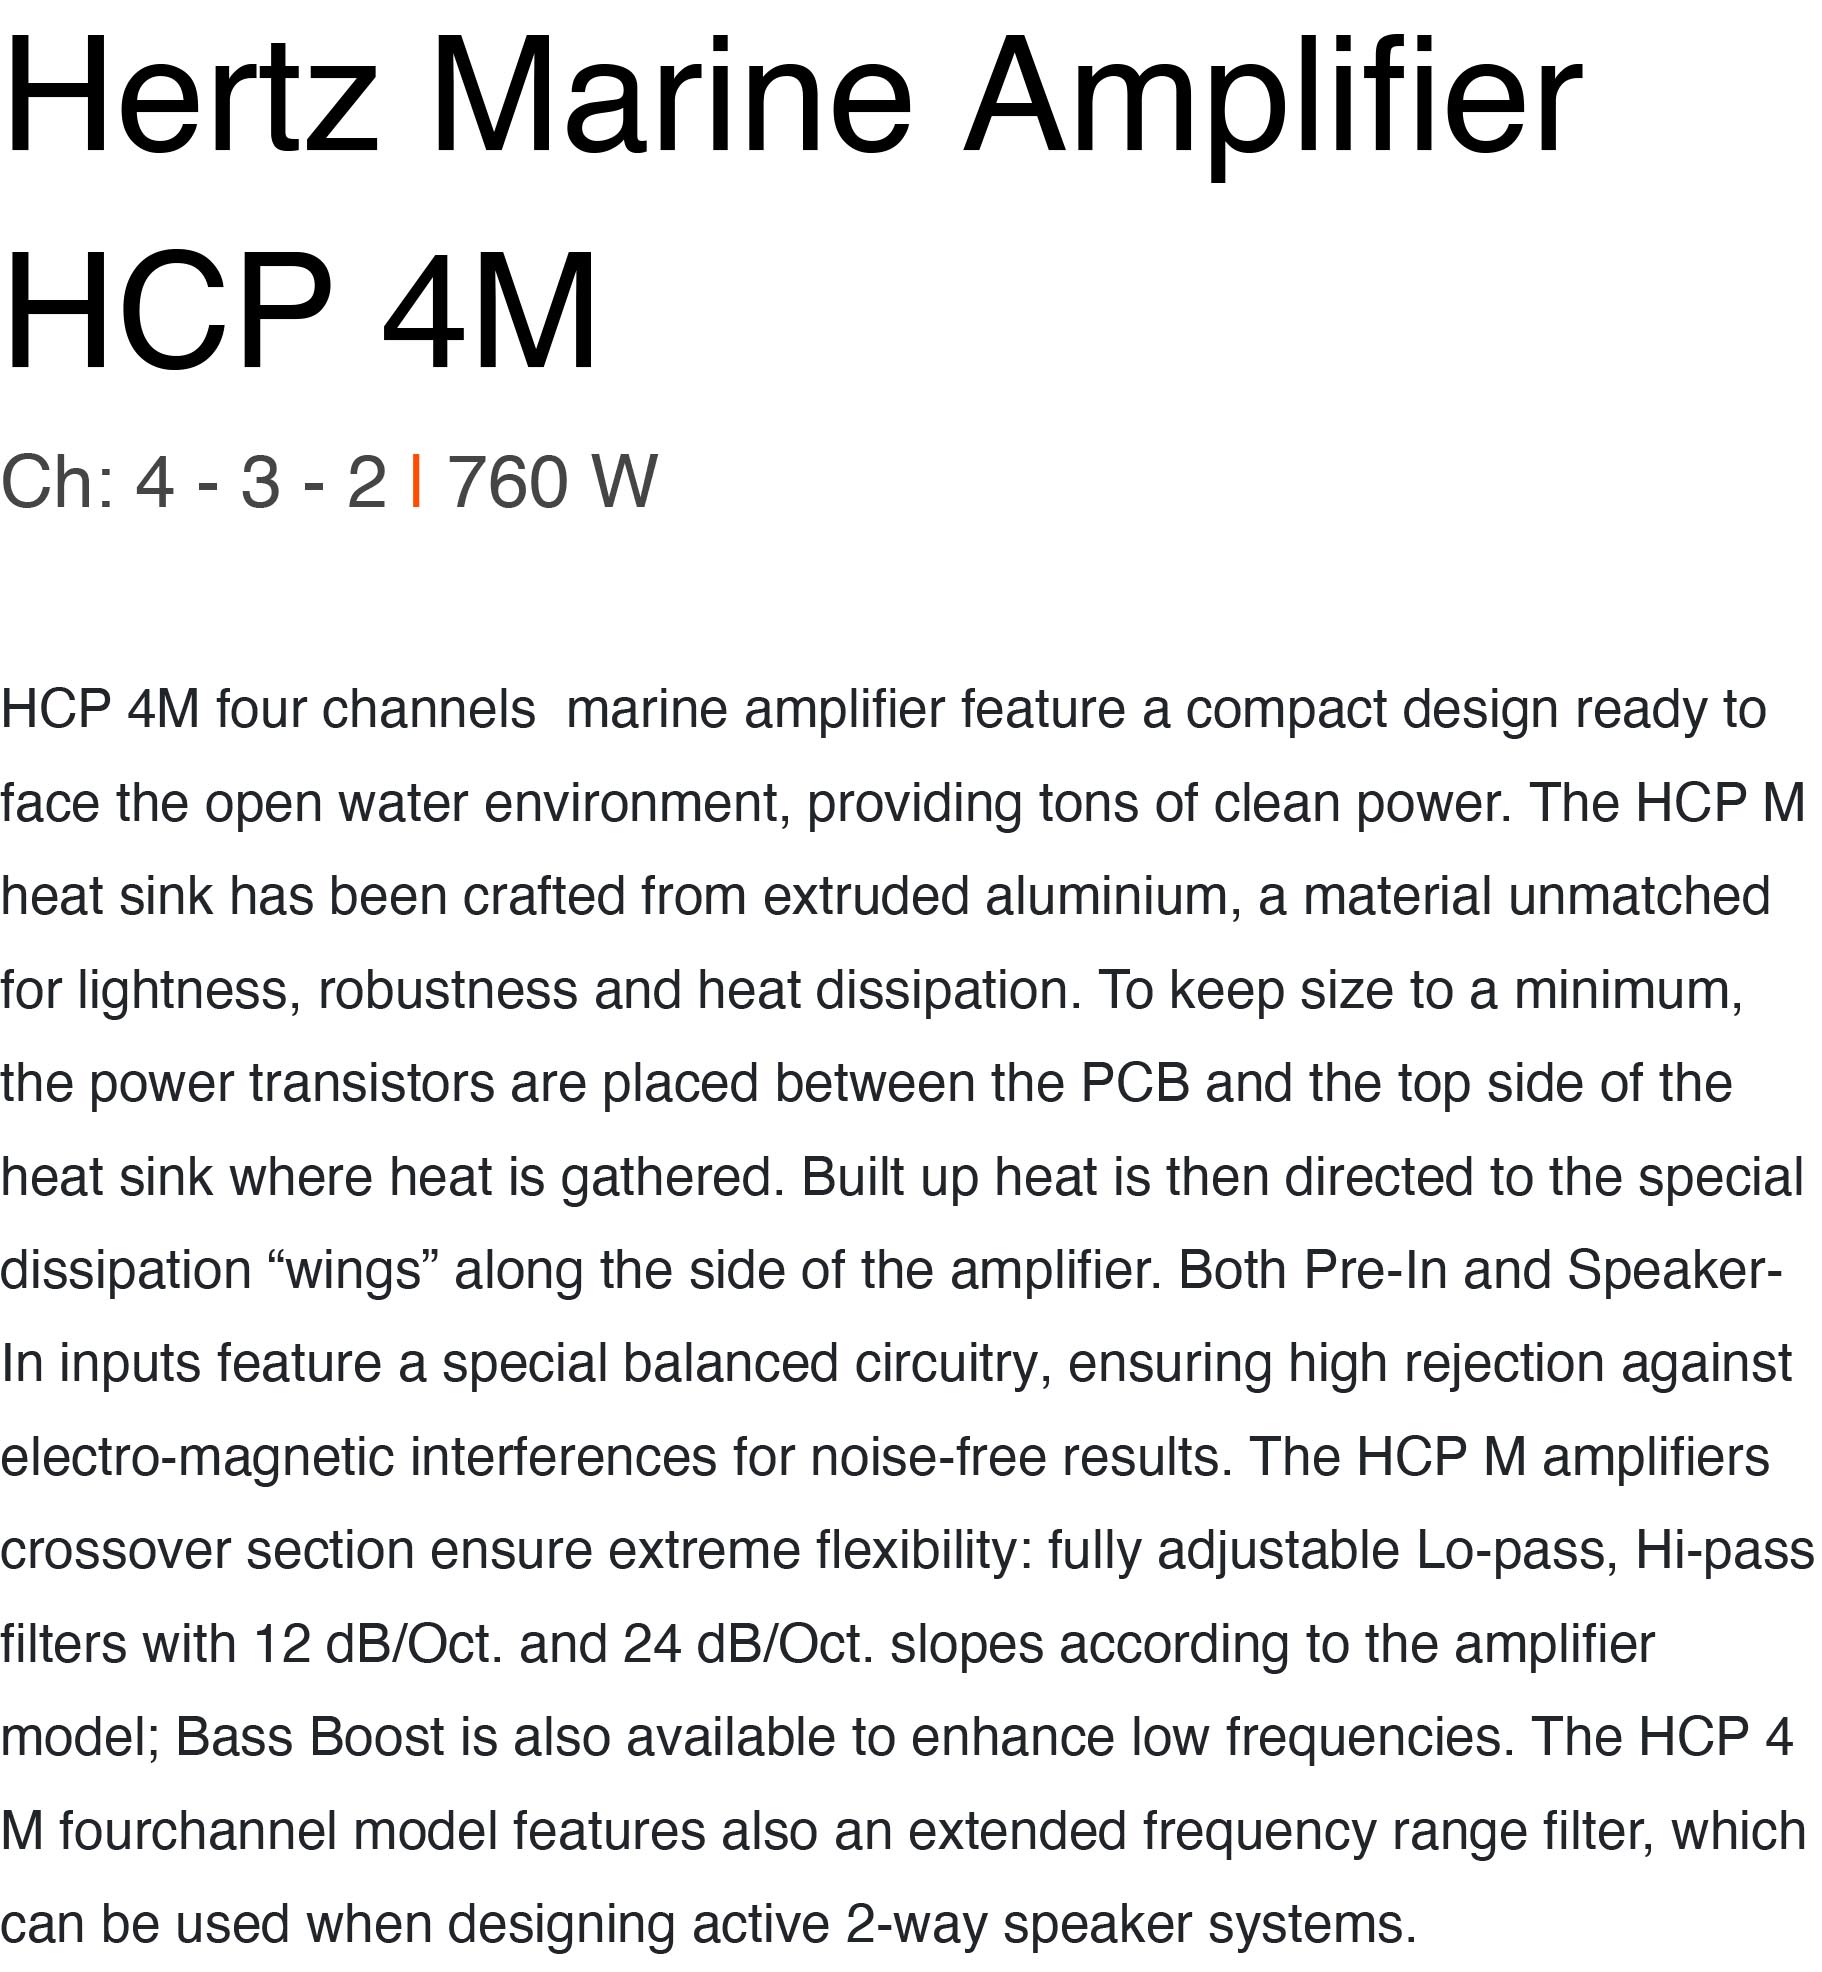 Hertz Amplifier HCP 4M 4 Channel